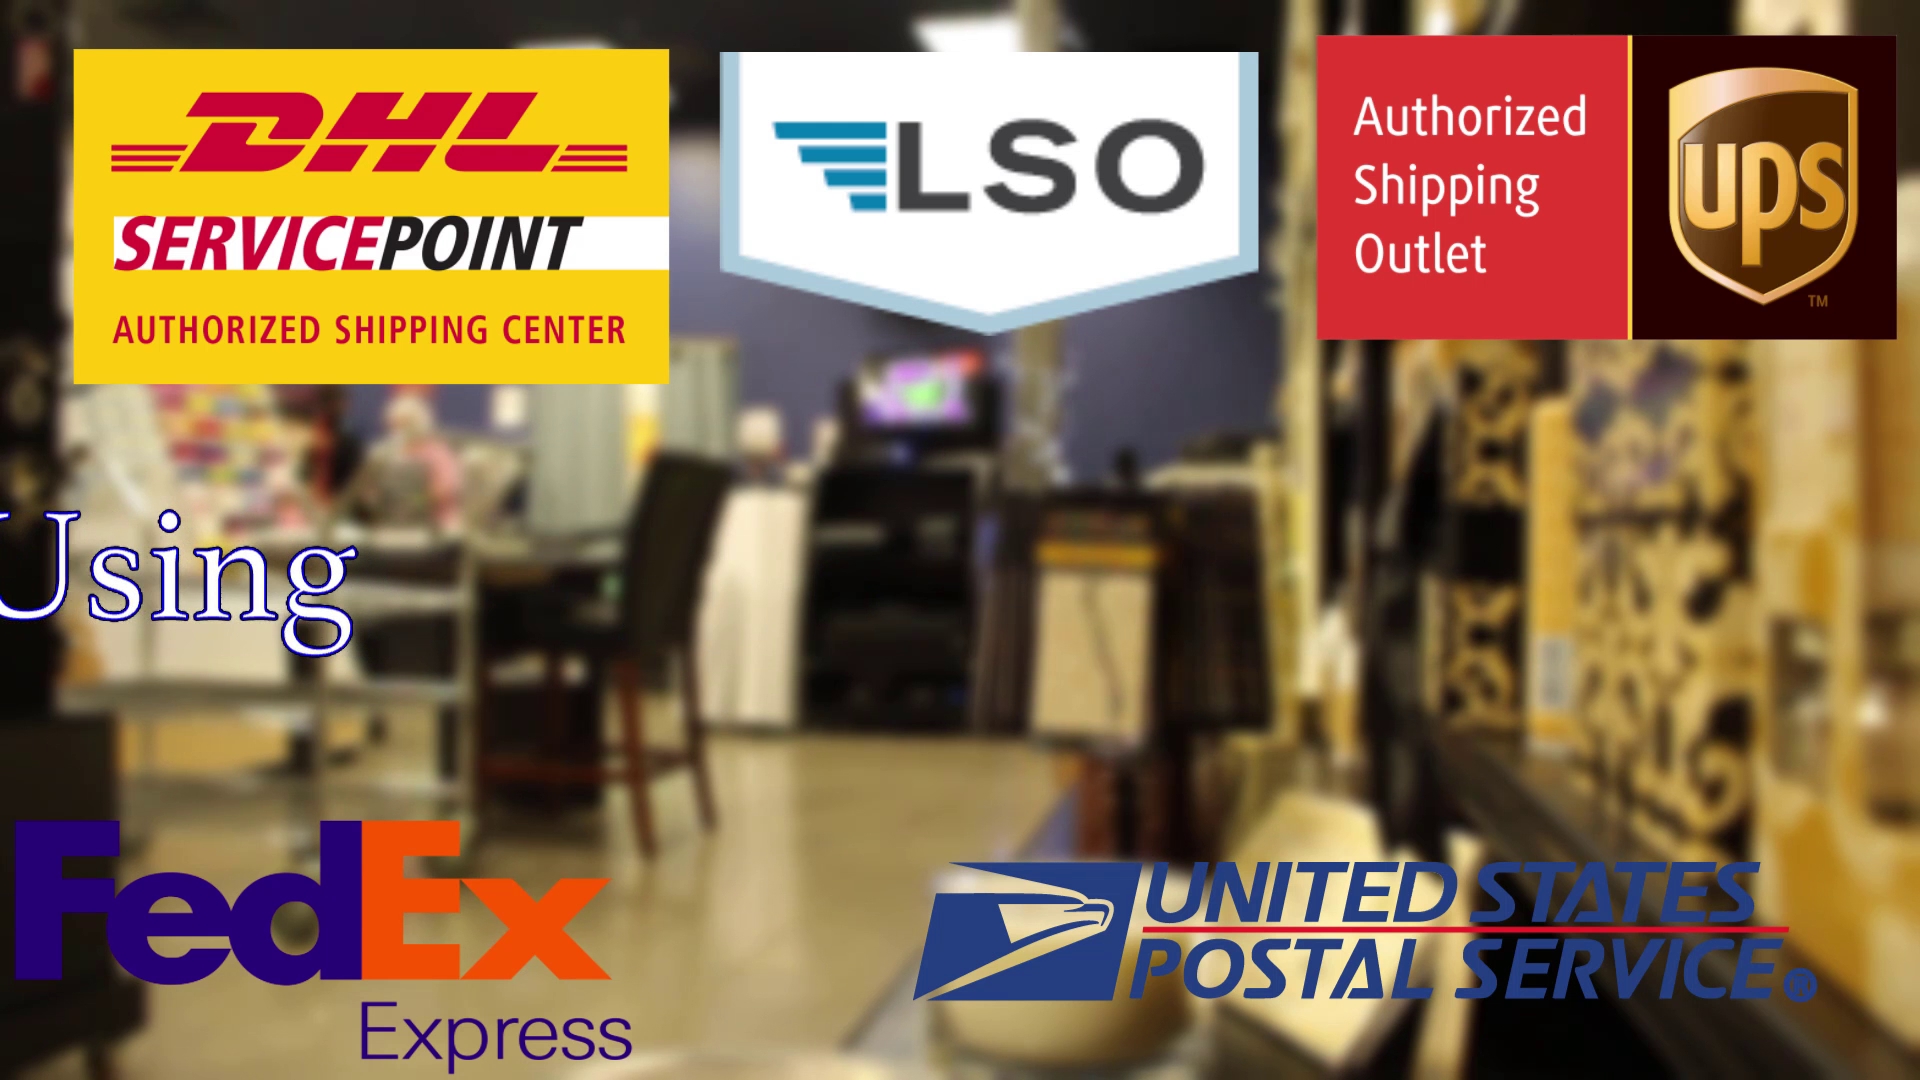 Zip It Postal Center - a PackageHub Business Center